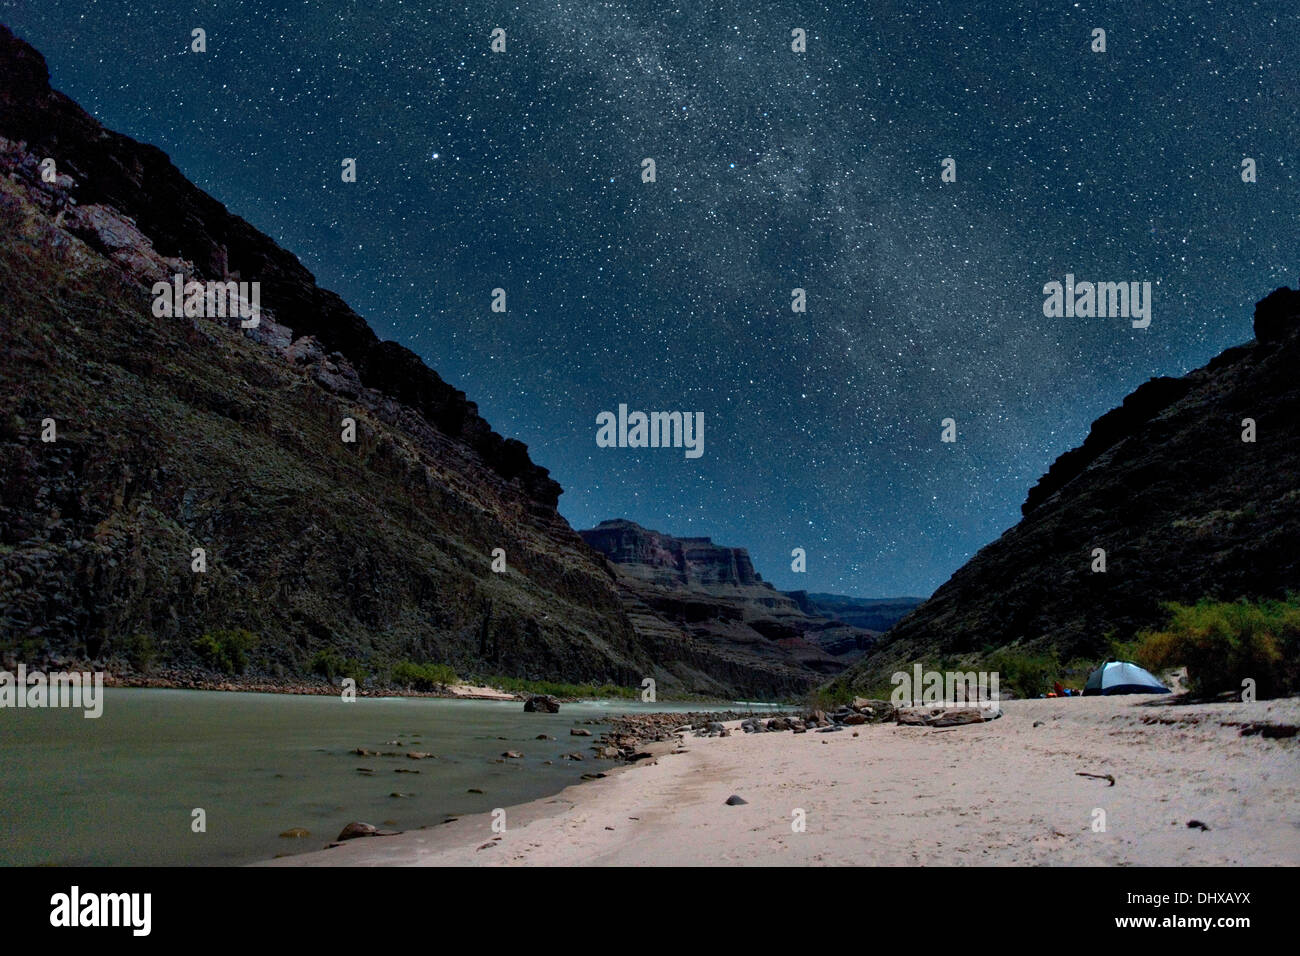 Un camping le long de la rivière sous les étoiles au Grand Canyon, Arizona, USA Banque D'Images